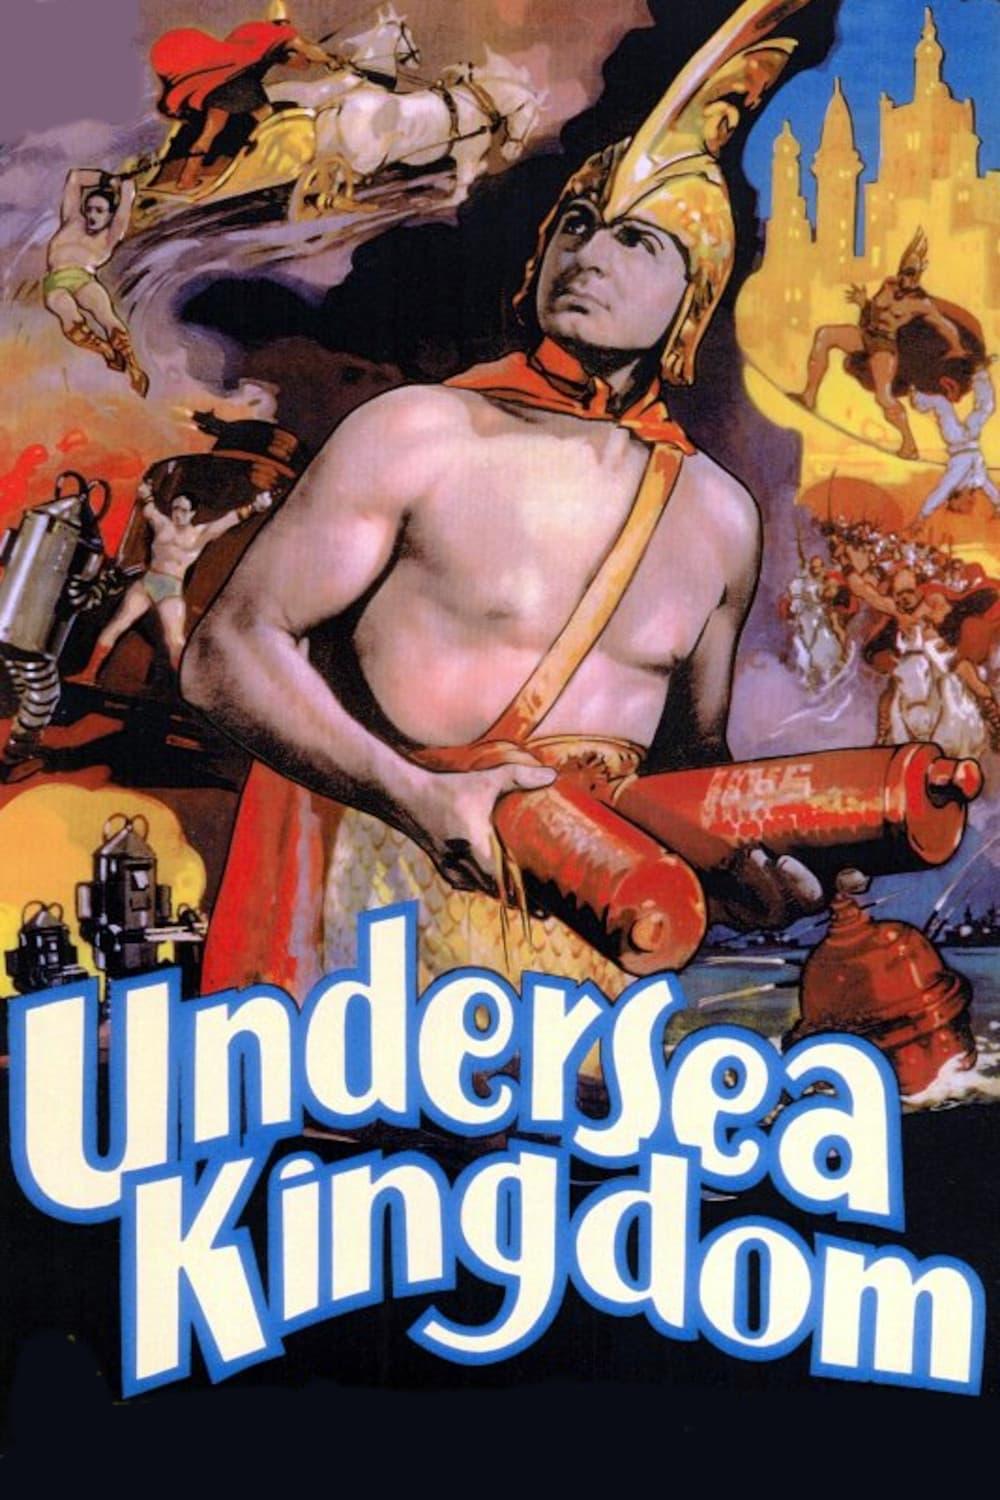 Undersea Kingdom poster